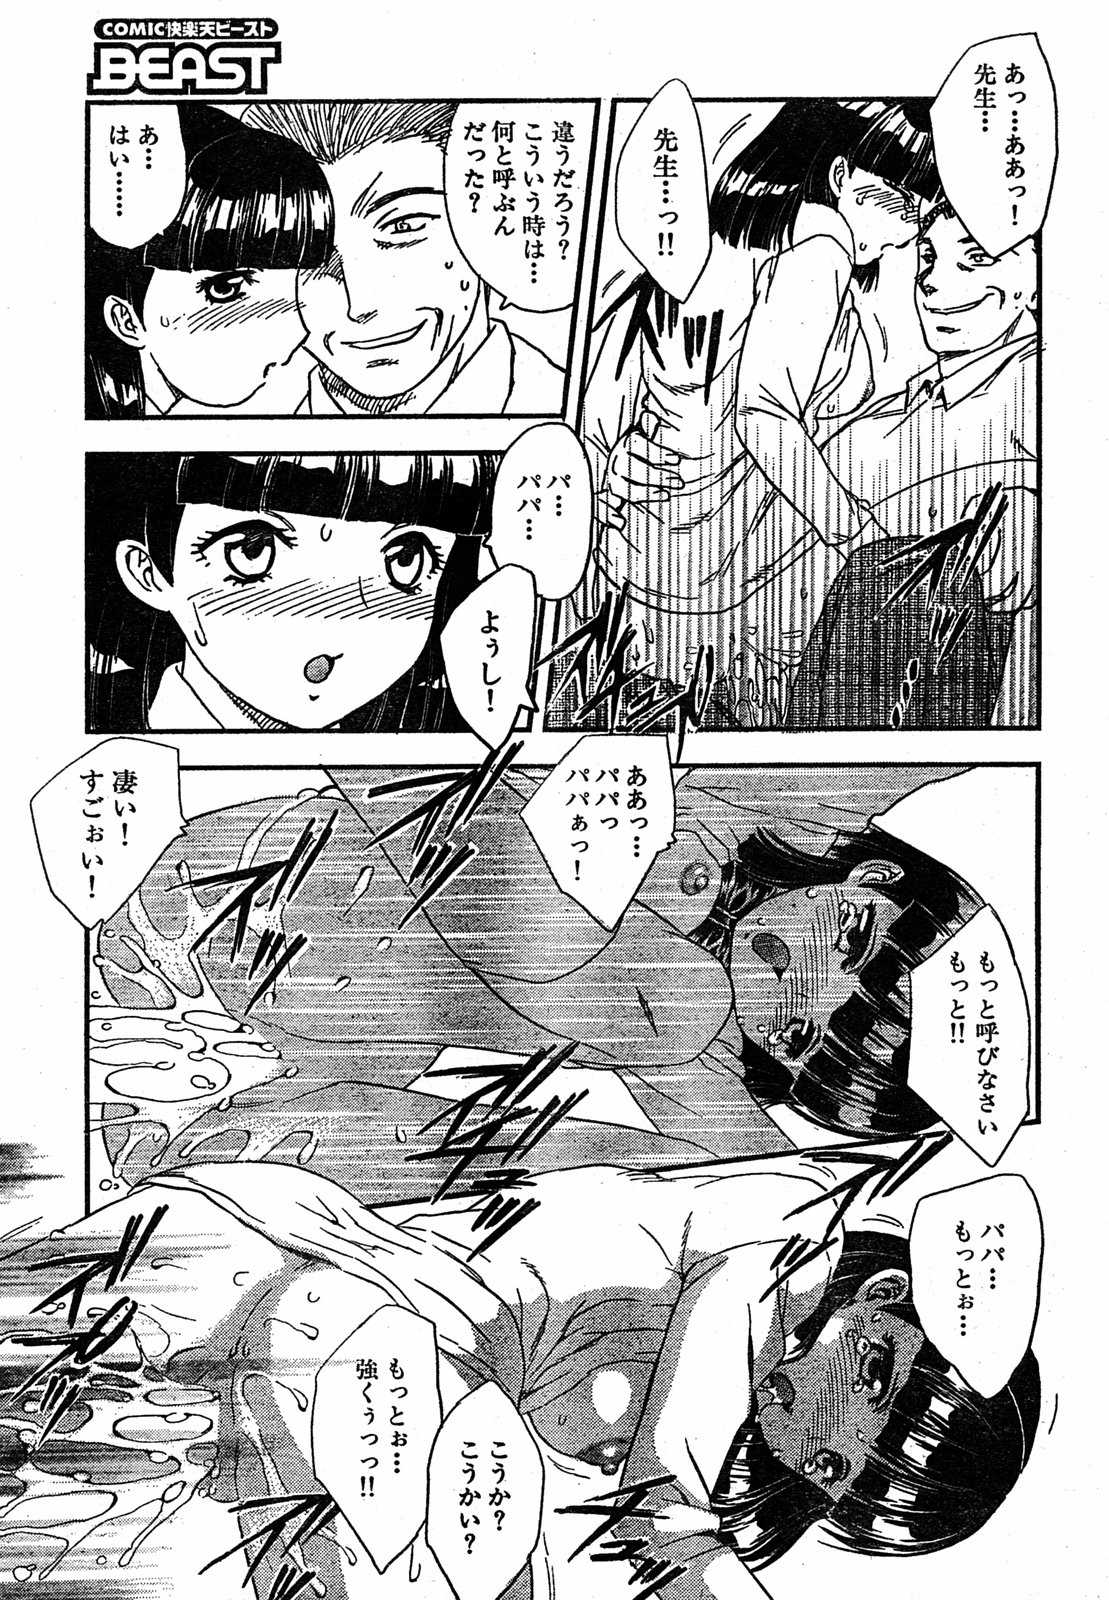 [2005.06.15]Comic Kairakuten Beast Volume 2 